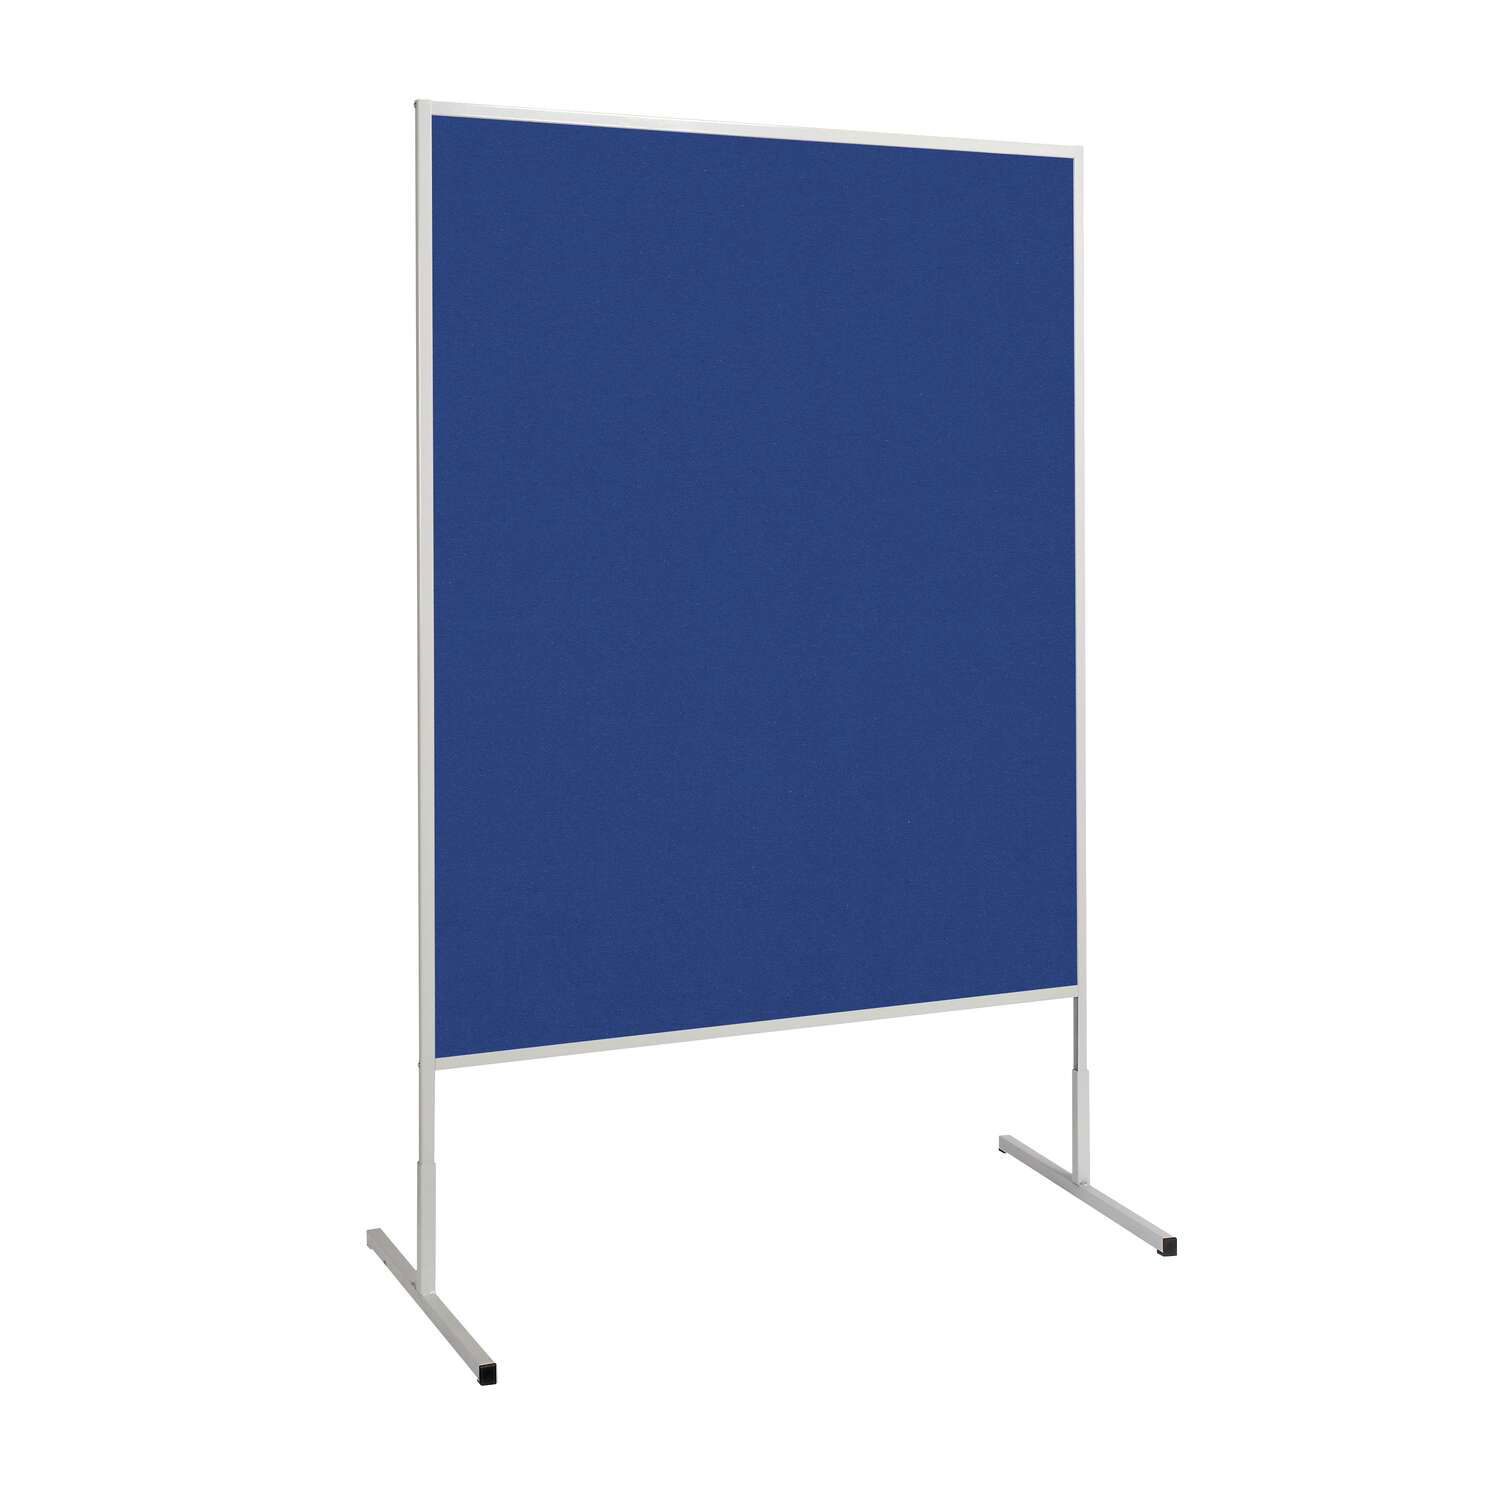 Moderationstafel MAULstandard Filz blau, 150x120 cm